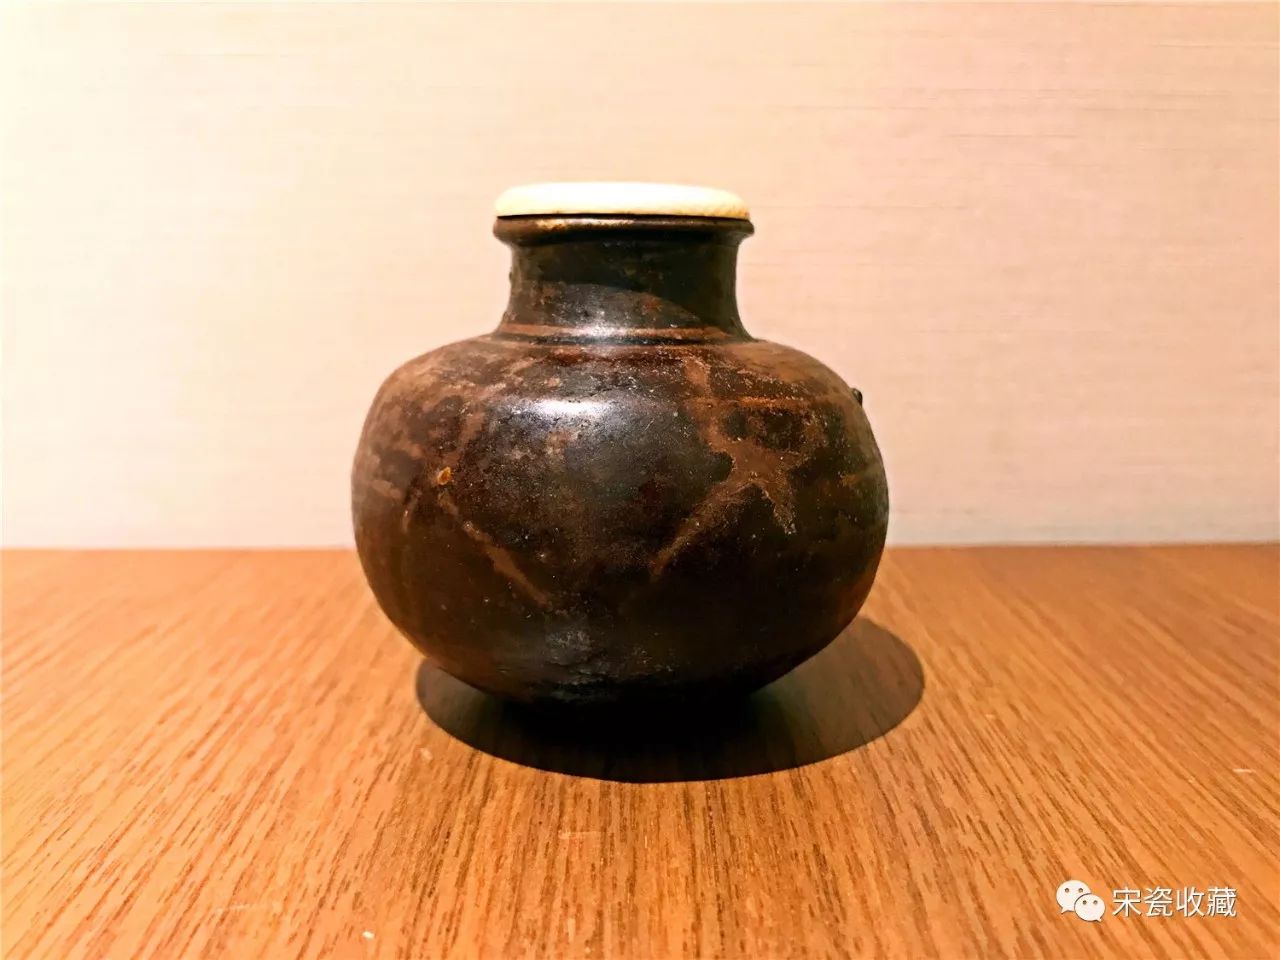 洪塘窑的窑址位于福州西北郊的洪山乡洪塘村,日本茶道史上将这种点茶